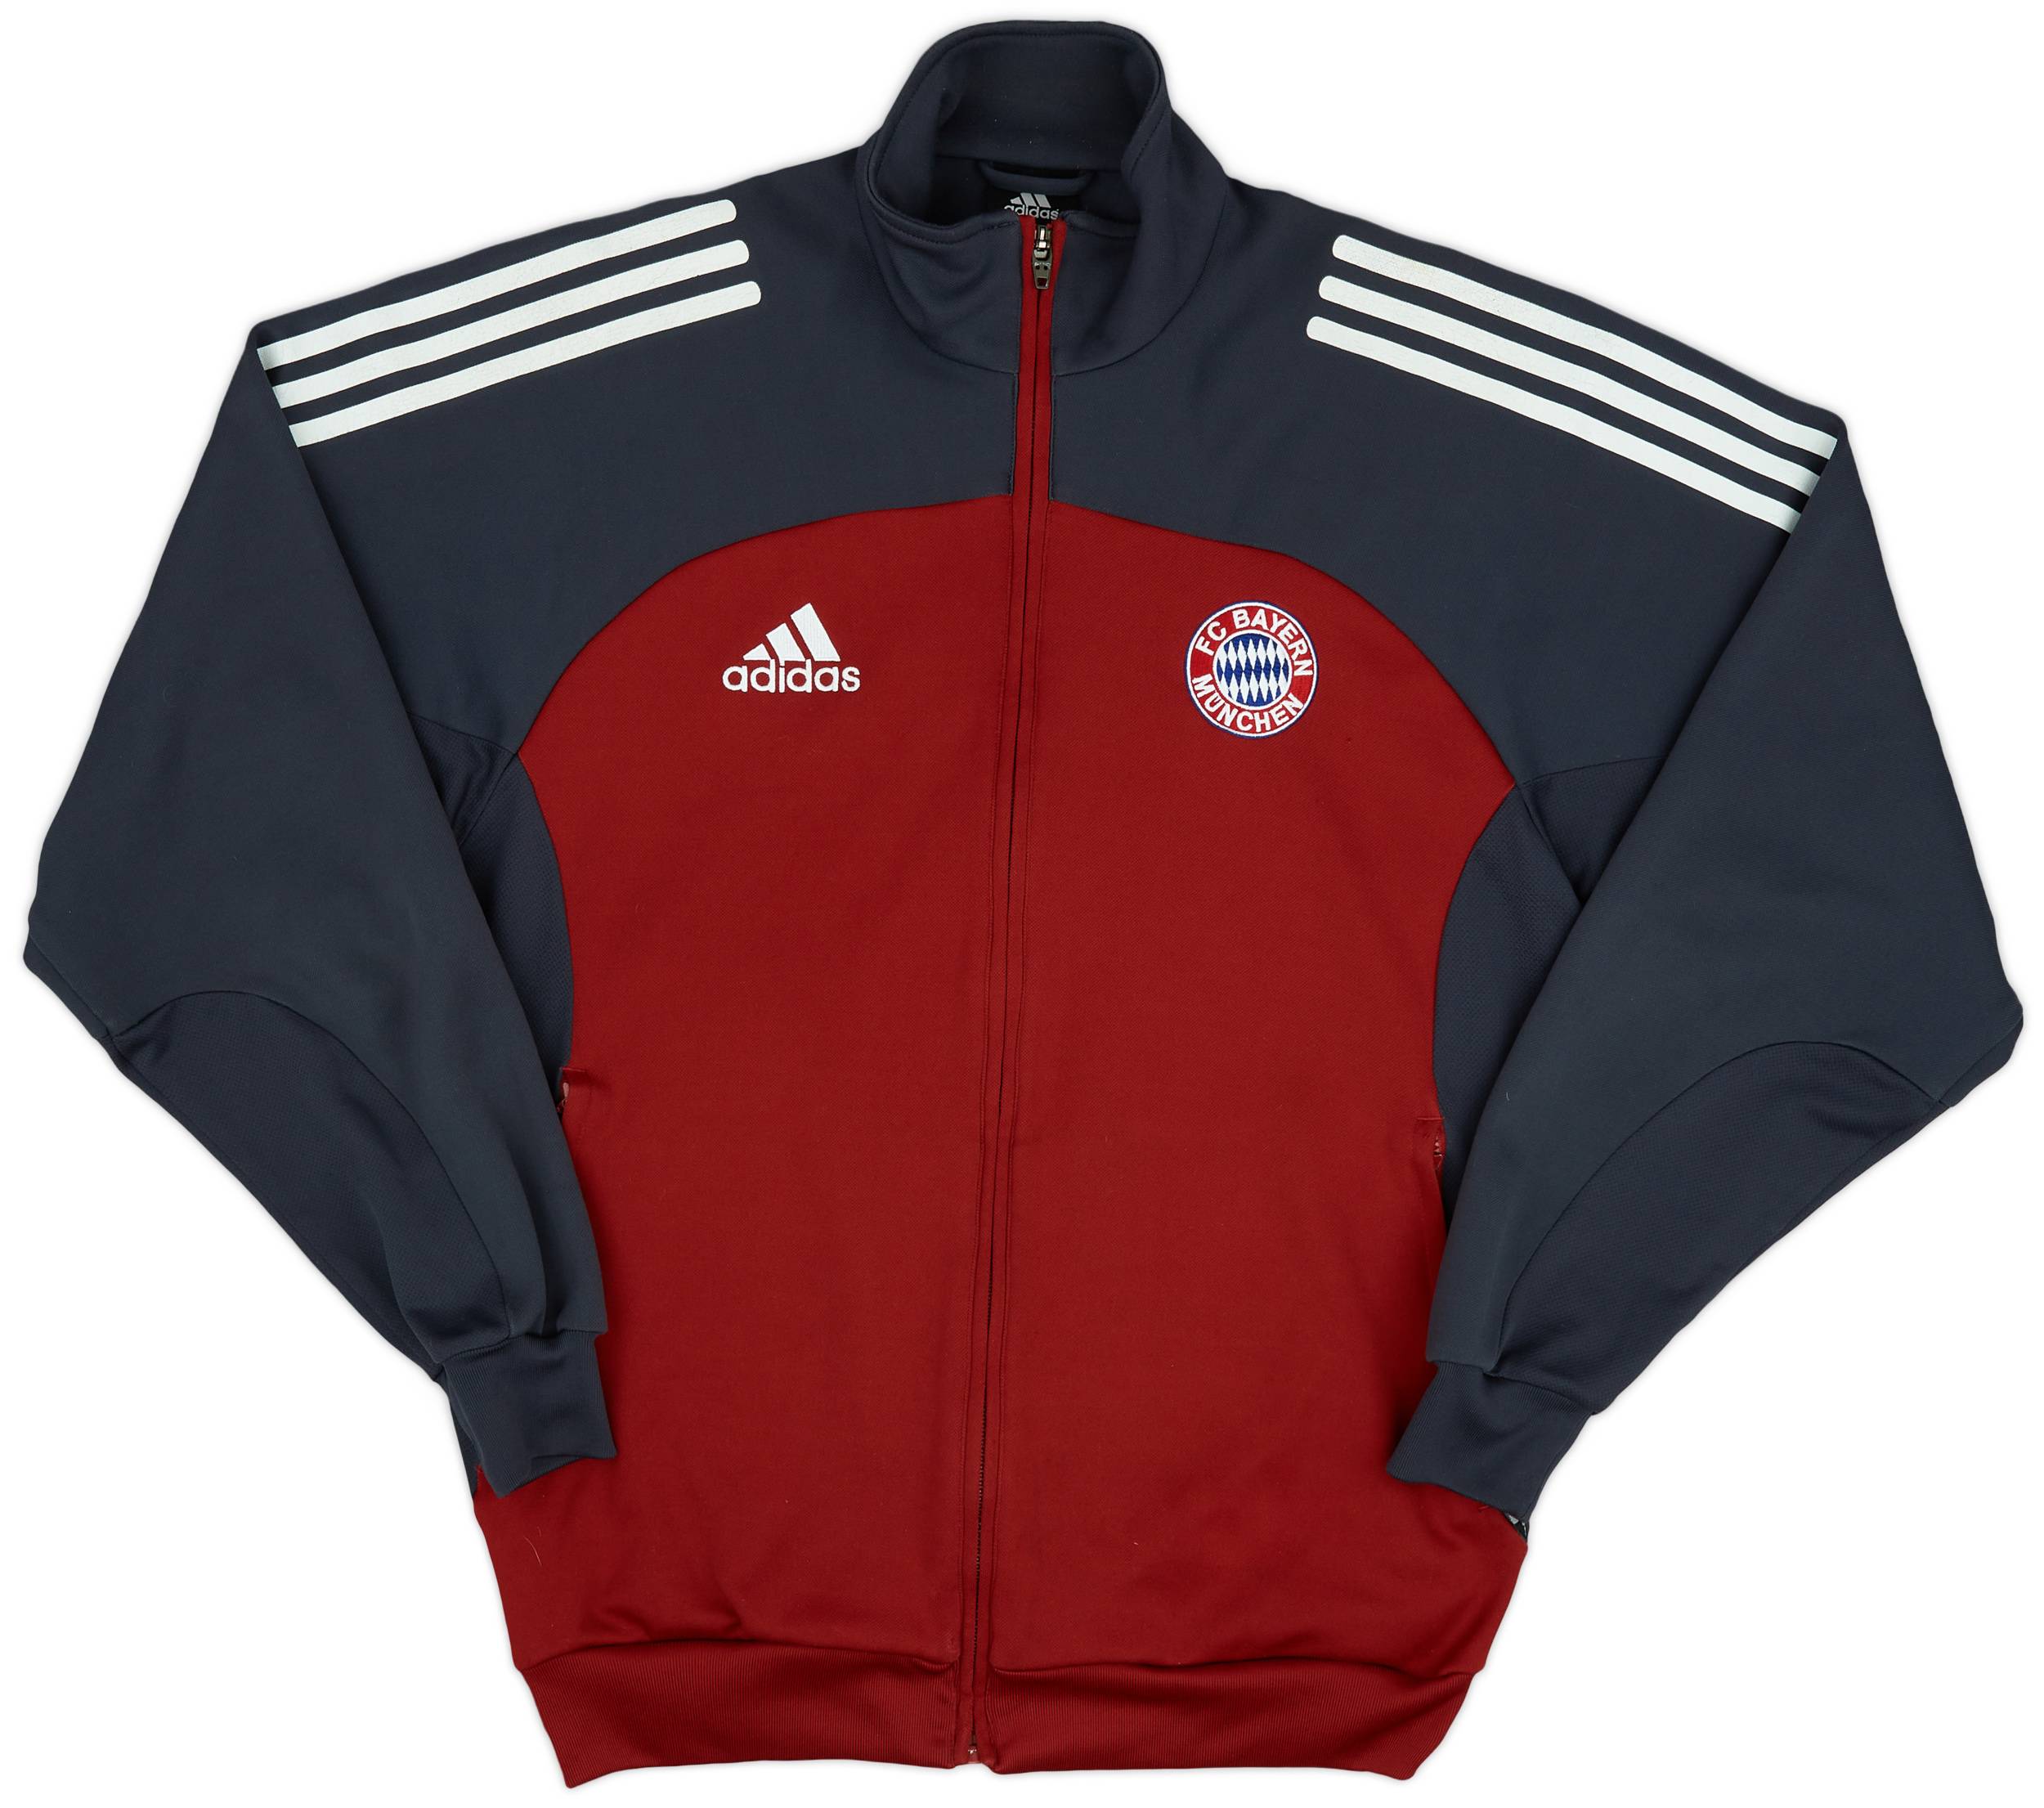 2002-03 Bayern Munich adidas Track Jacket - 7/10 - (XS)